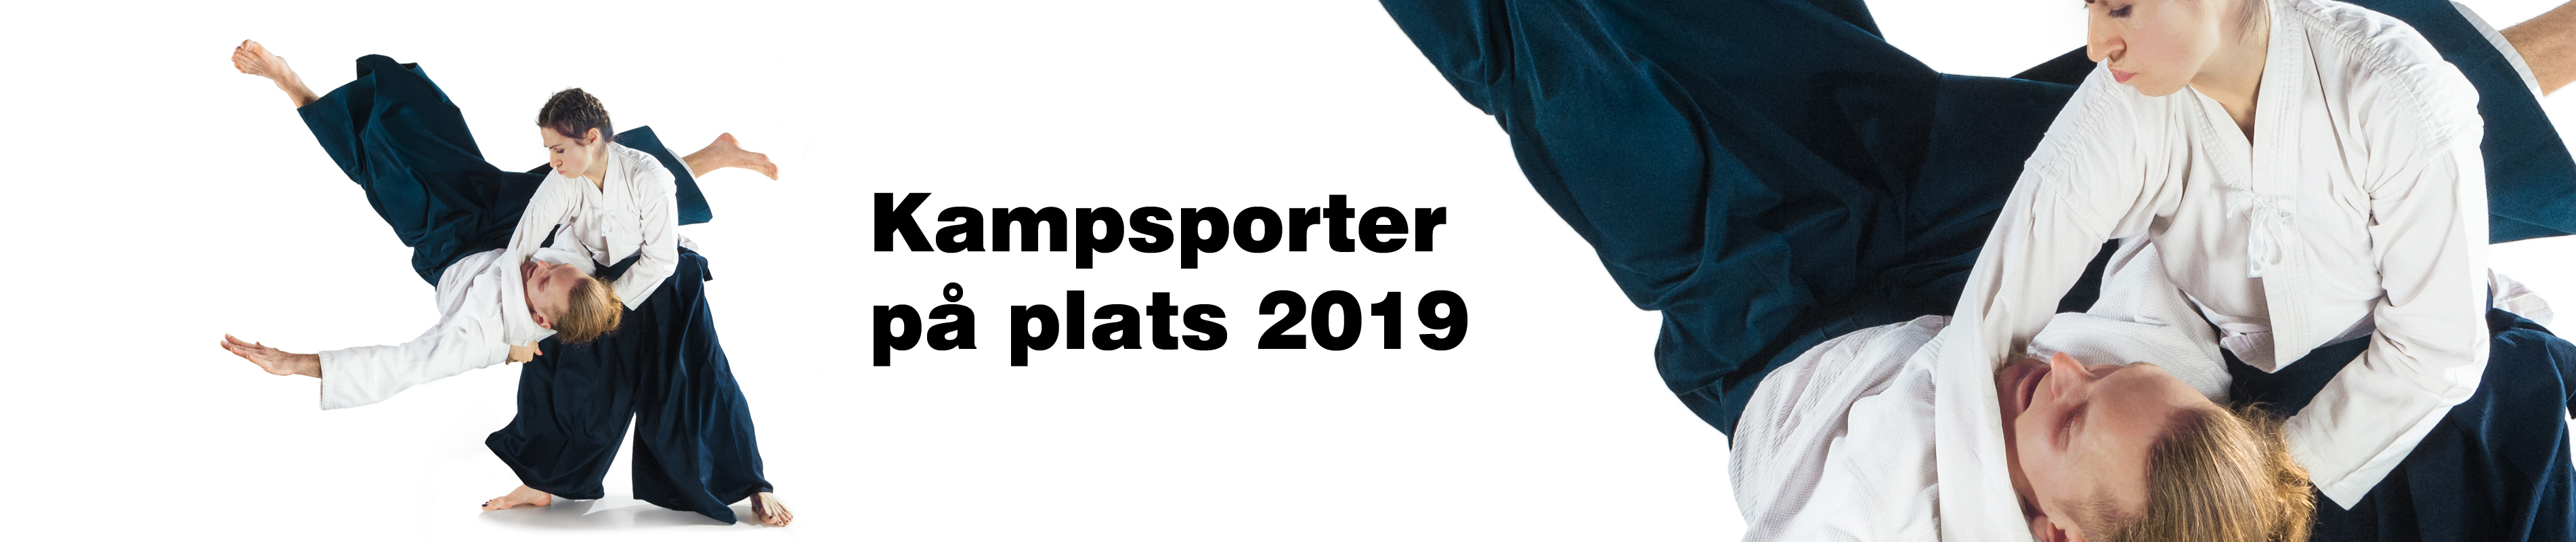 Kampsporter på plats 2019